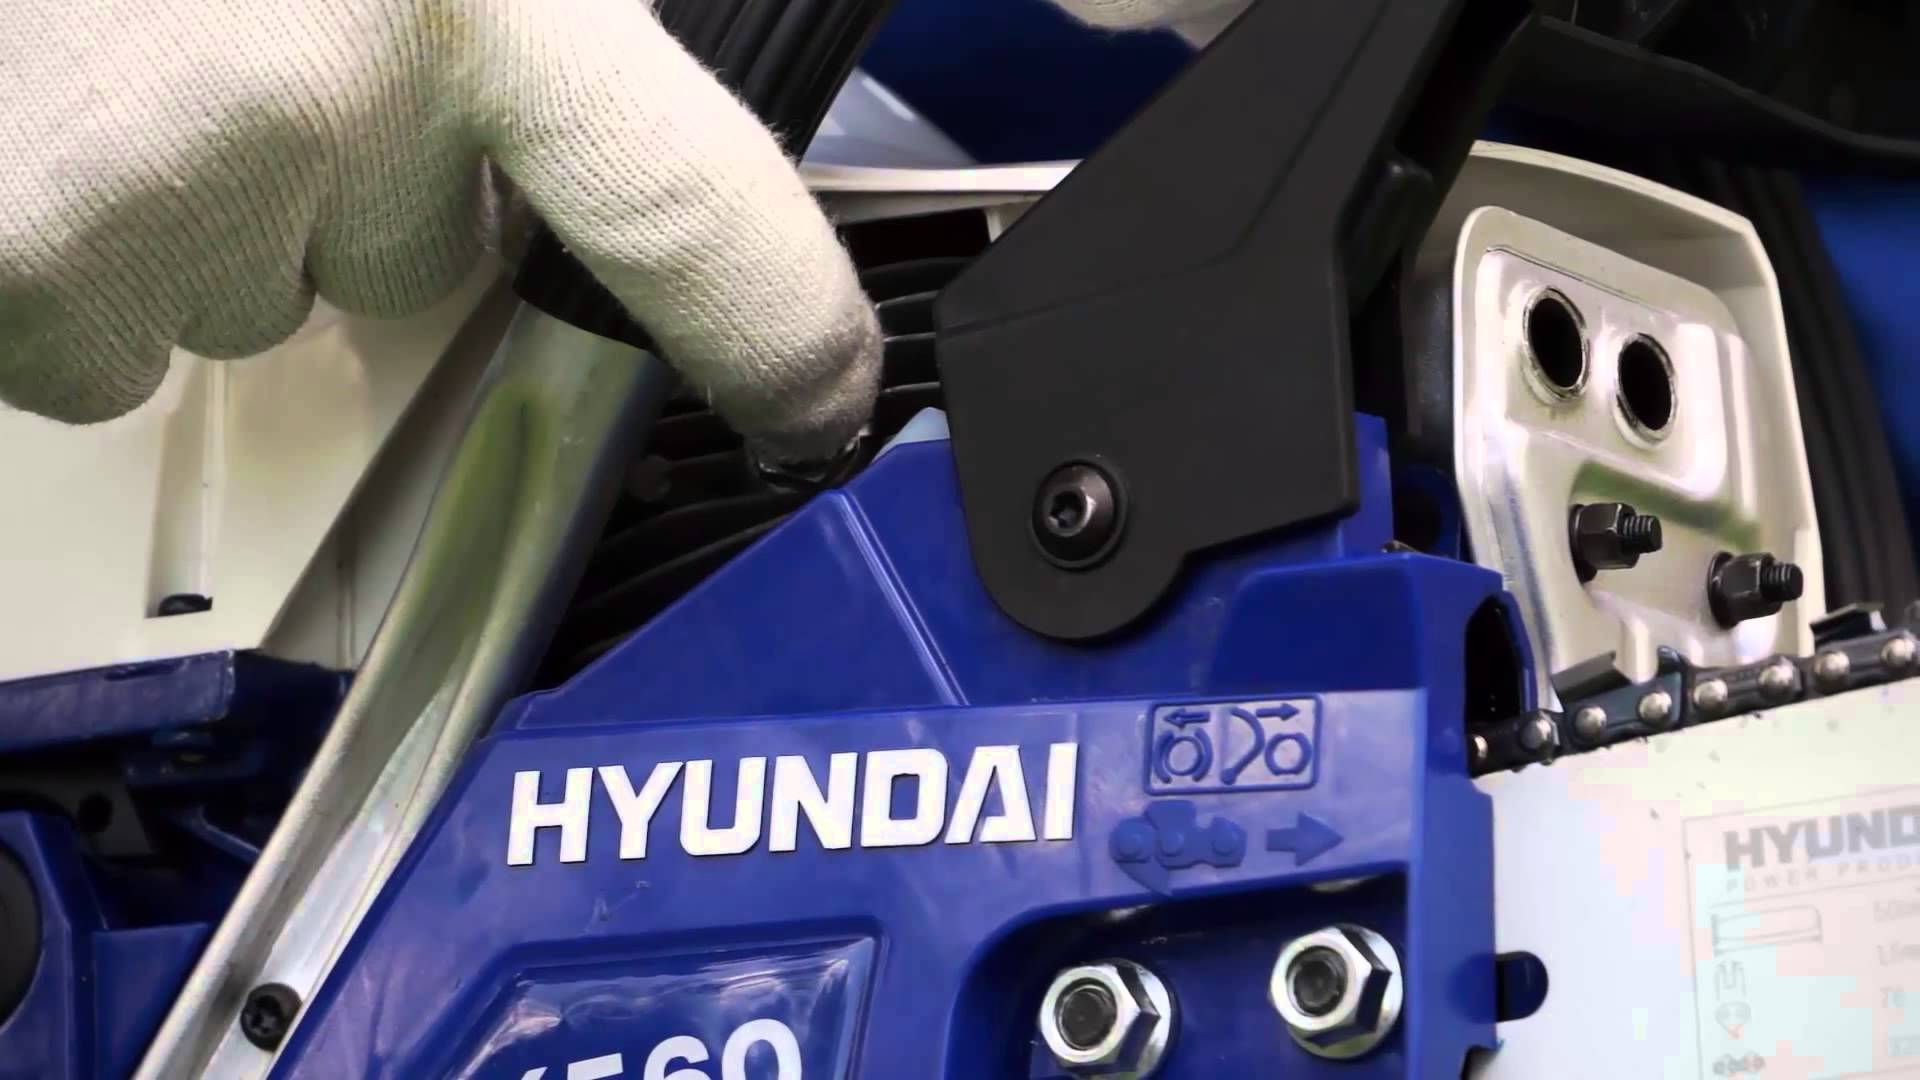 Hyundai grandininių pjūklų bandymas ir patirtis: išsami Hyundai grandininių pjūklų modelių serijos apžvalga